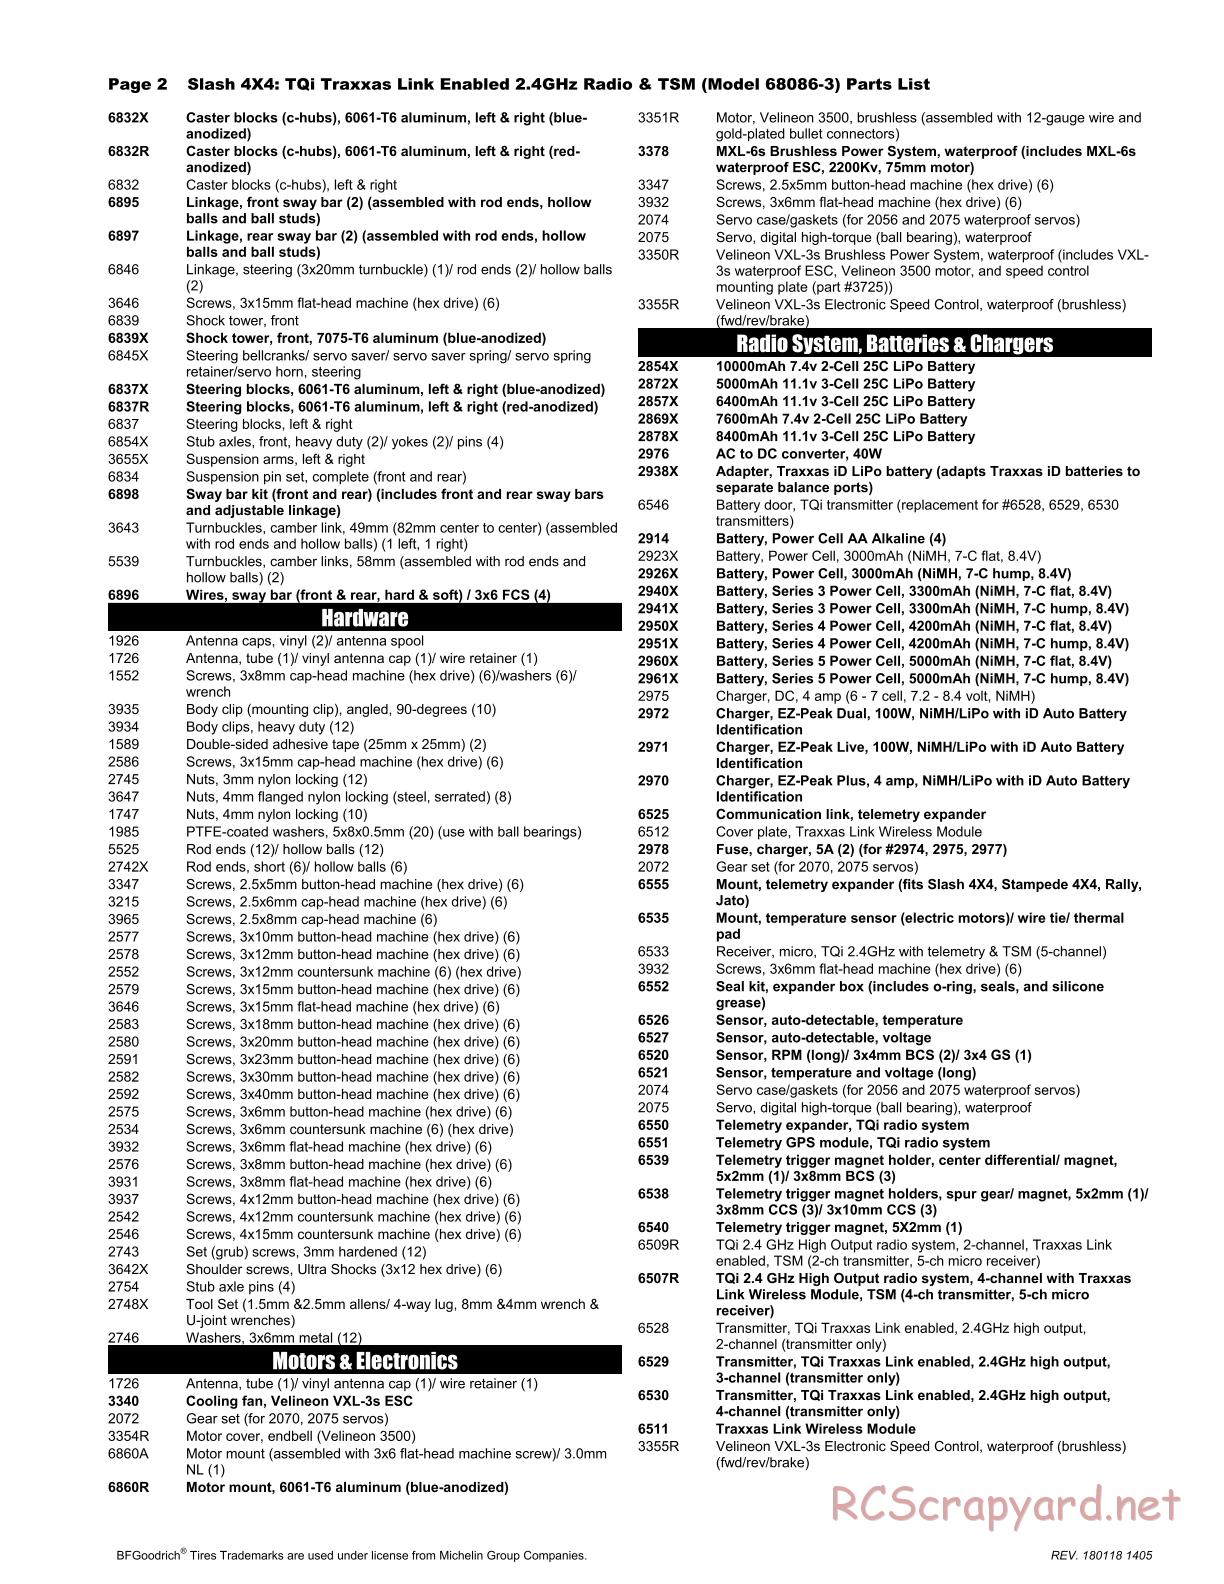 Traxxas - Slash 4x4 TSM (2015) - Parts List - Page 2